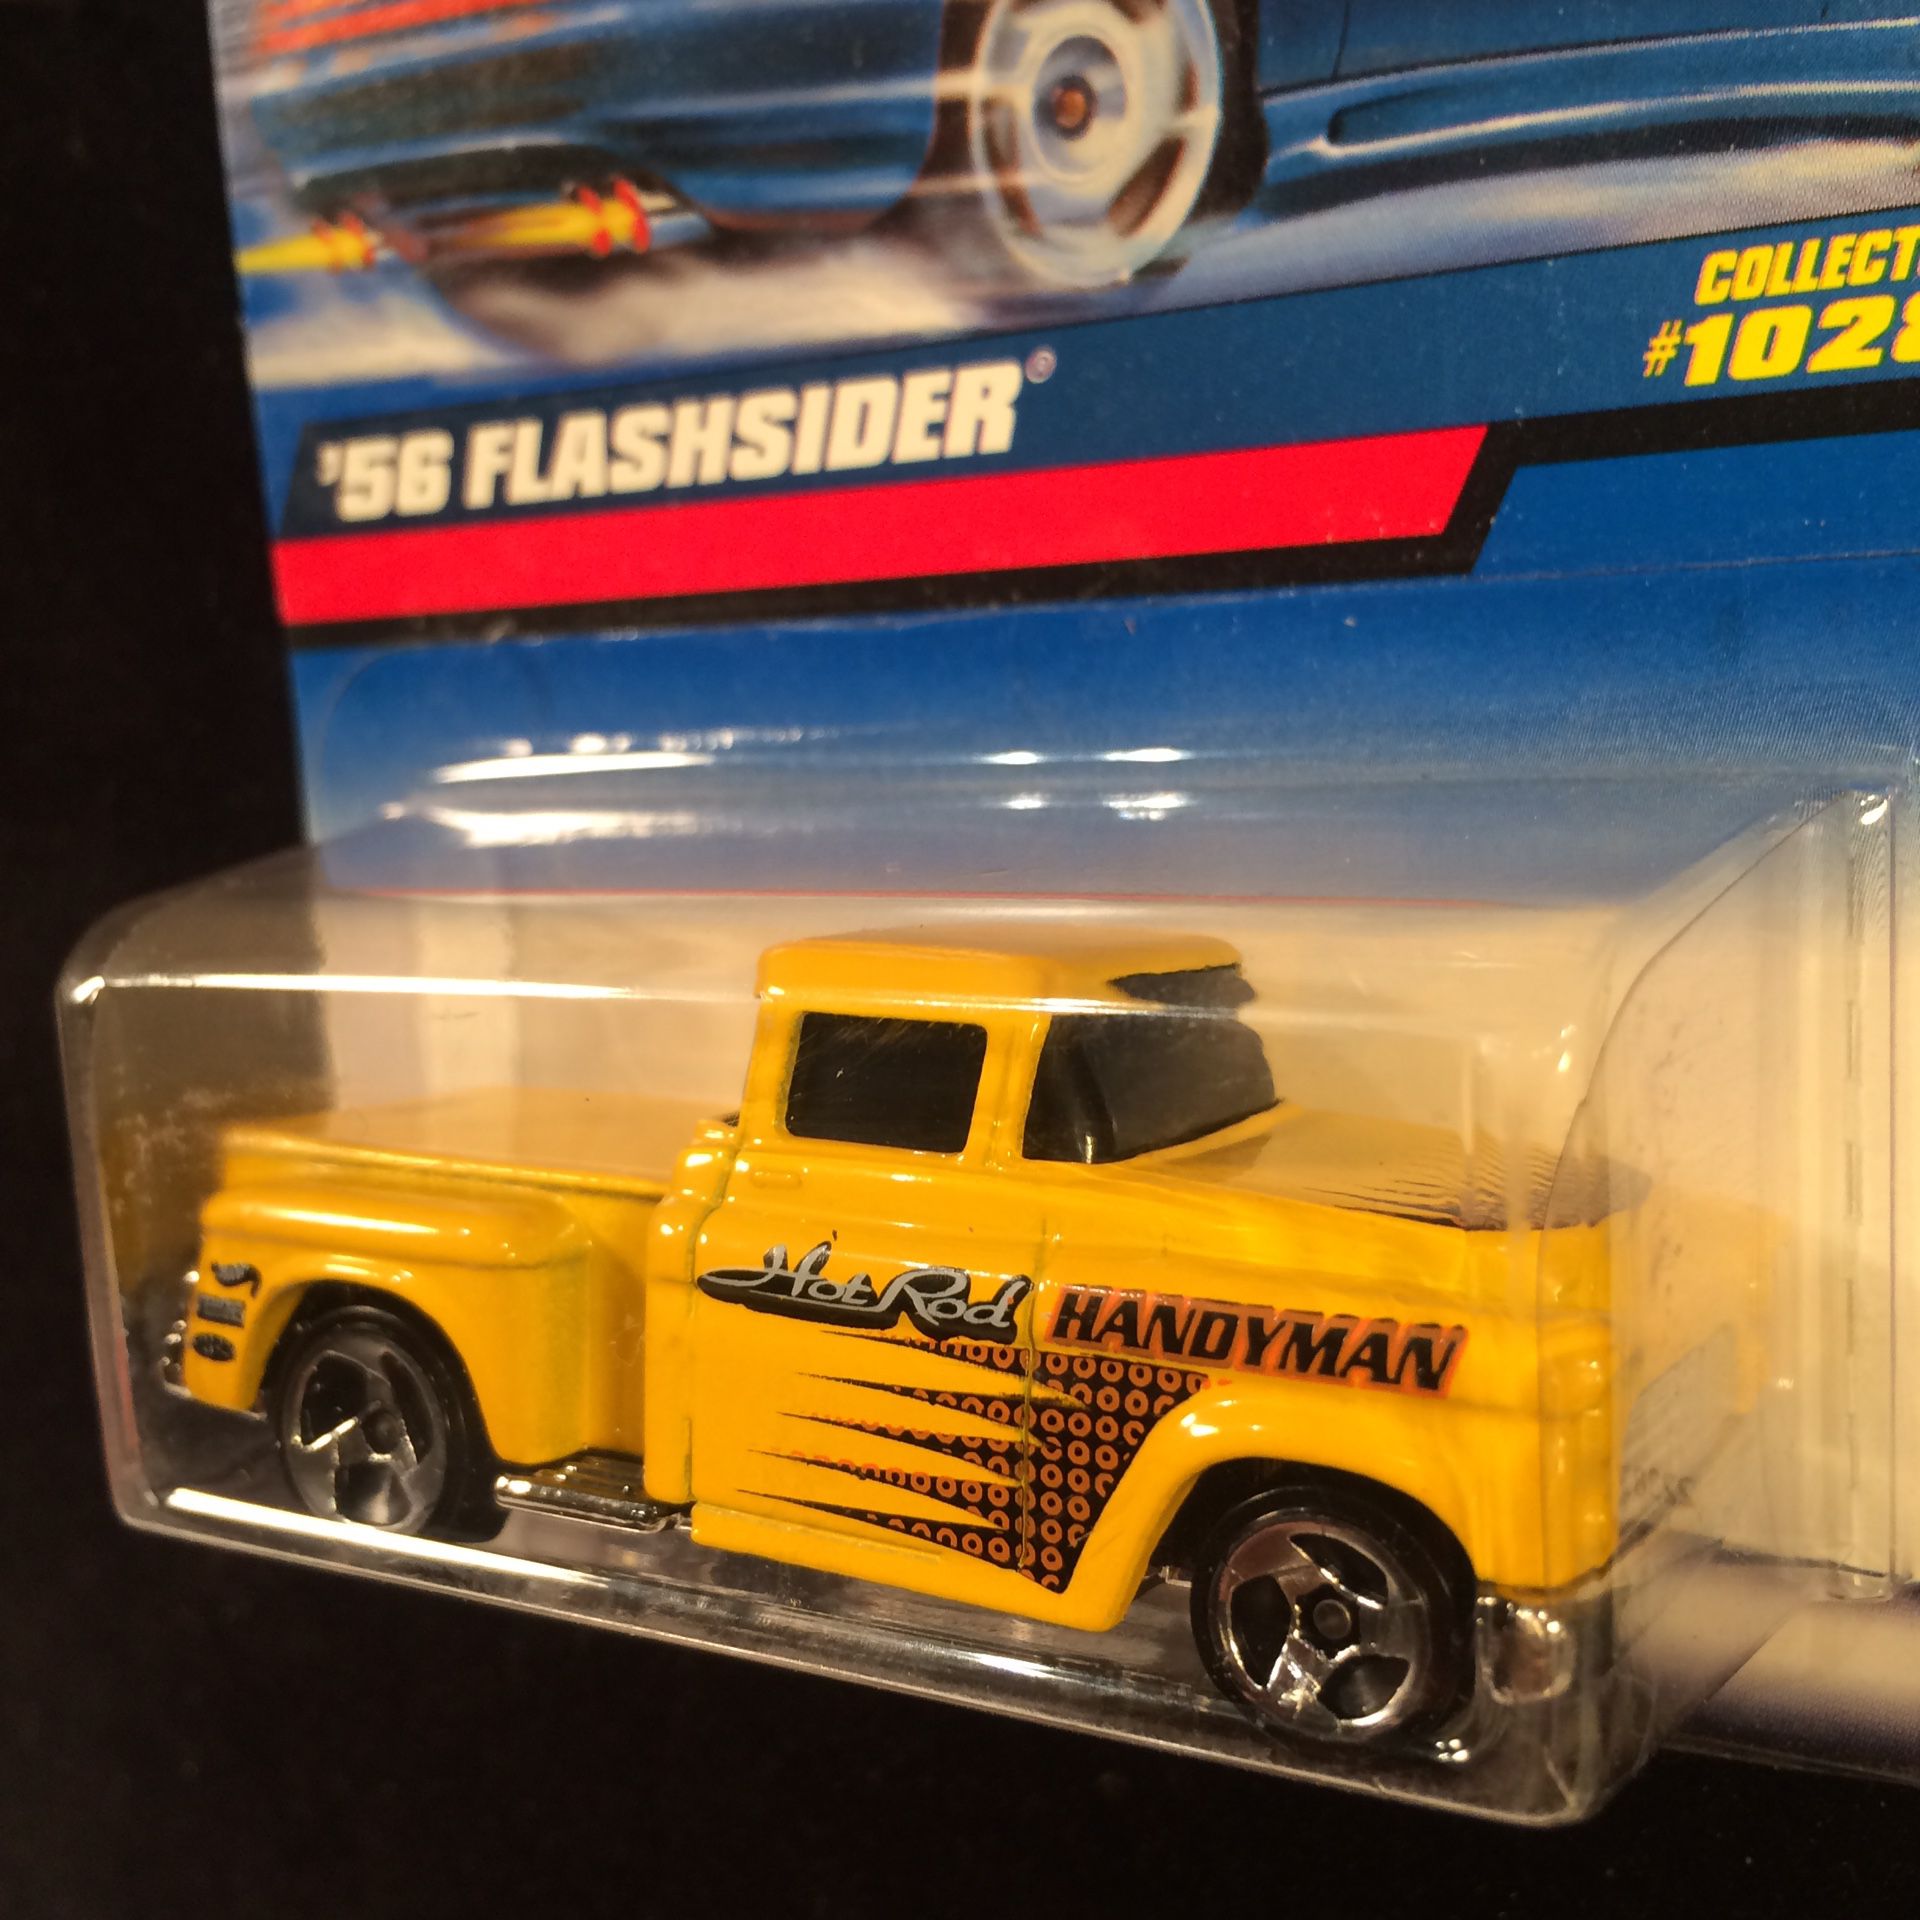 Hot Wheels ‘56 Flashsider Yellow 3 Spoke Variation